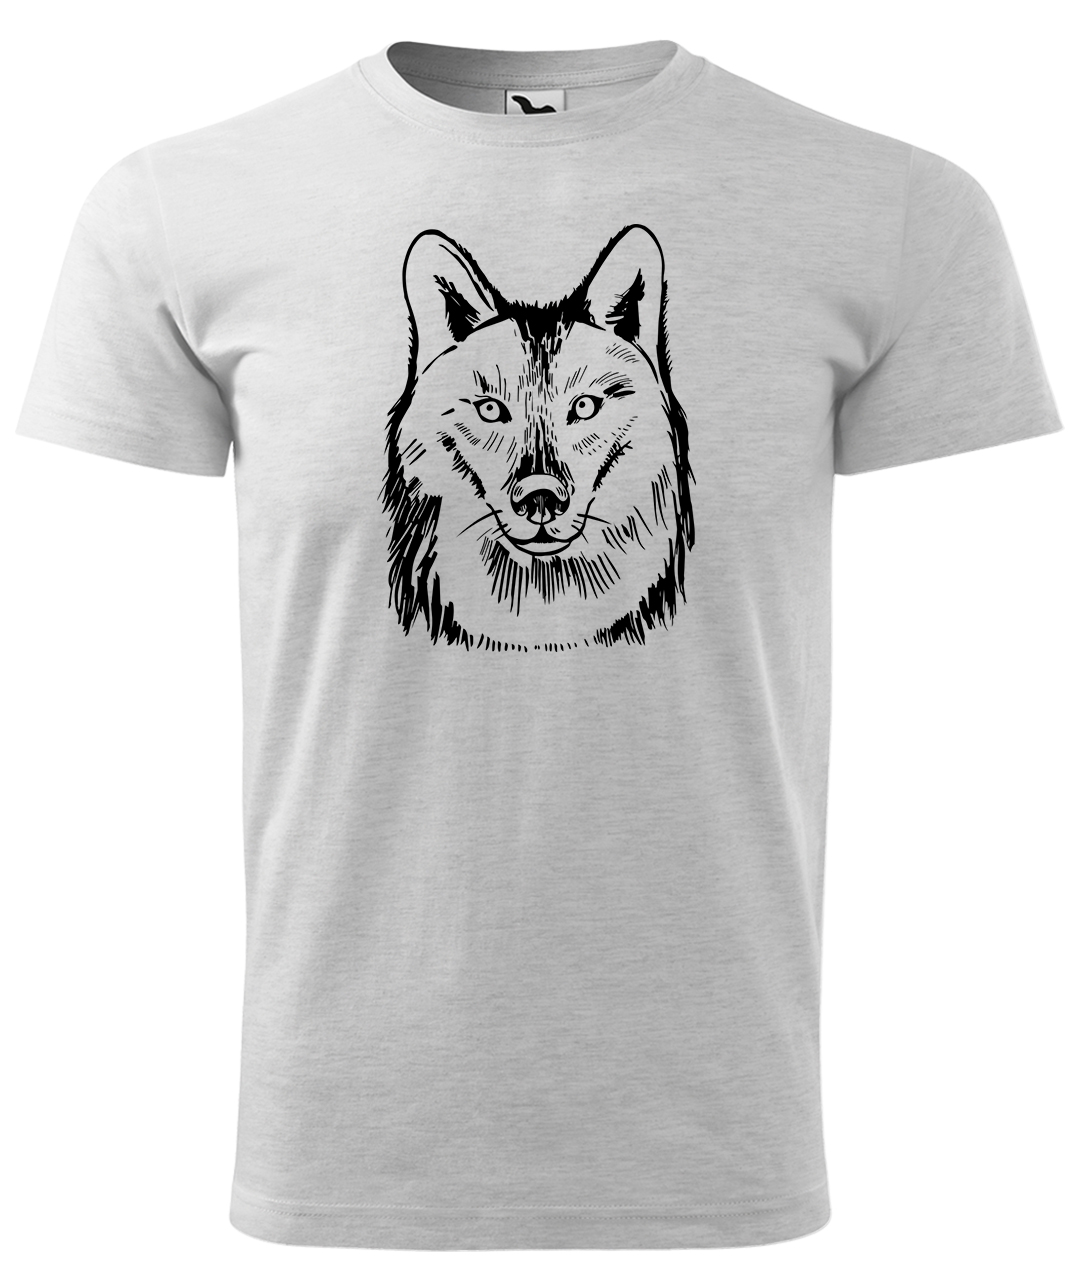 Dětské tričko s vlkem - Kresba vlka Velikost: 10 let / 146 cm, Barva: Světle šedý melír (03), Délka rukávu: Krátký rukáv